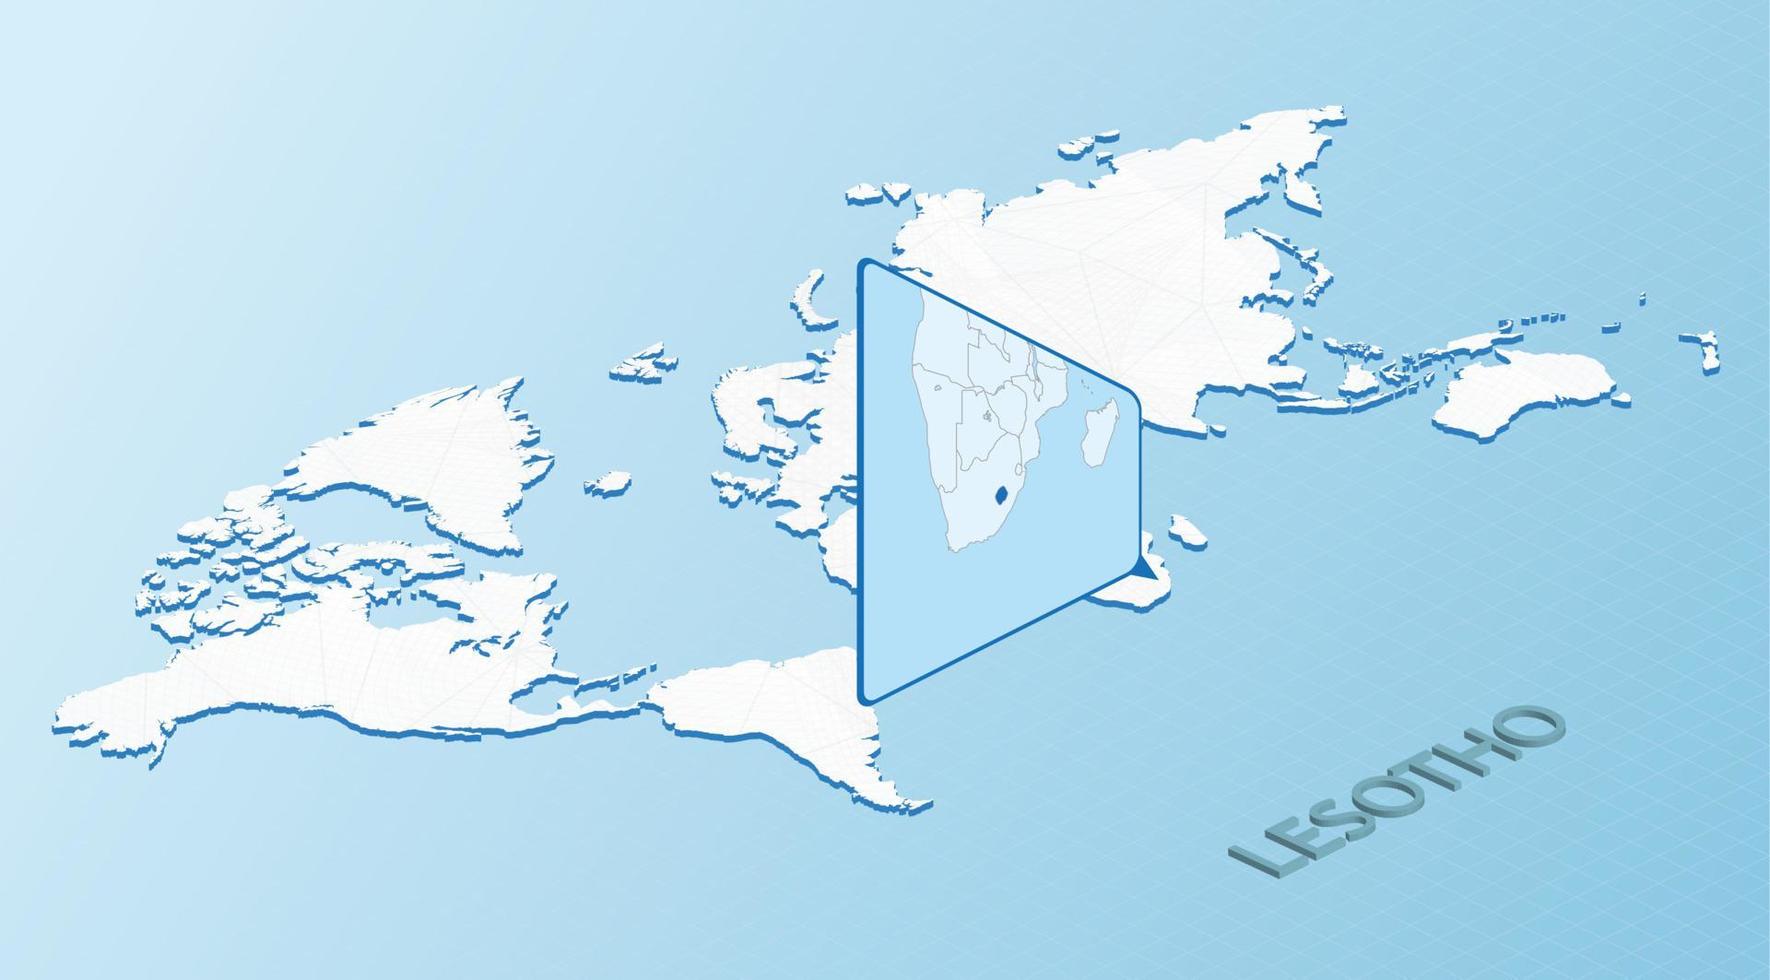 mondo carta geografica nel isometrico stile con dettagliato carta geografica di lesotho. leggero blu Lesoto carta geografica con astratto mondo carta geografica. vettore